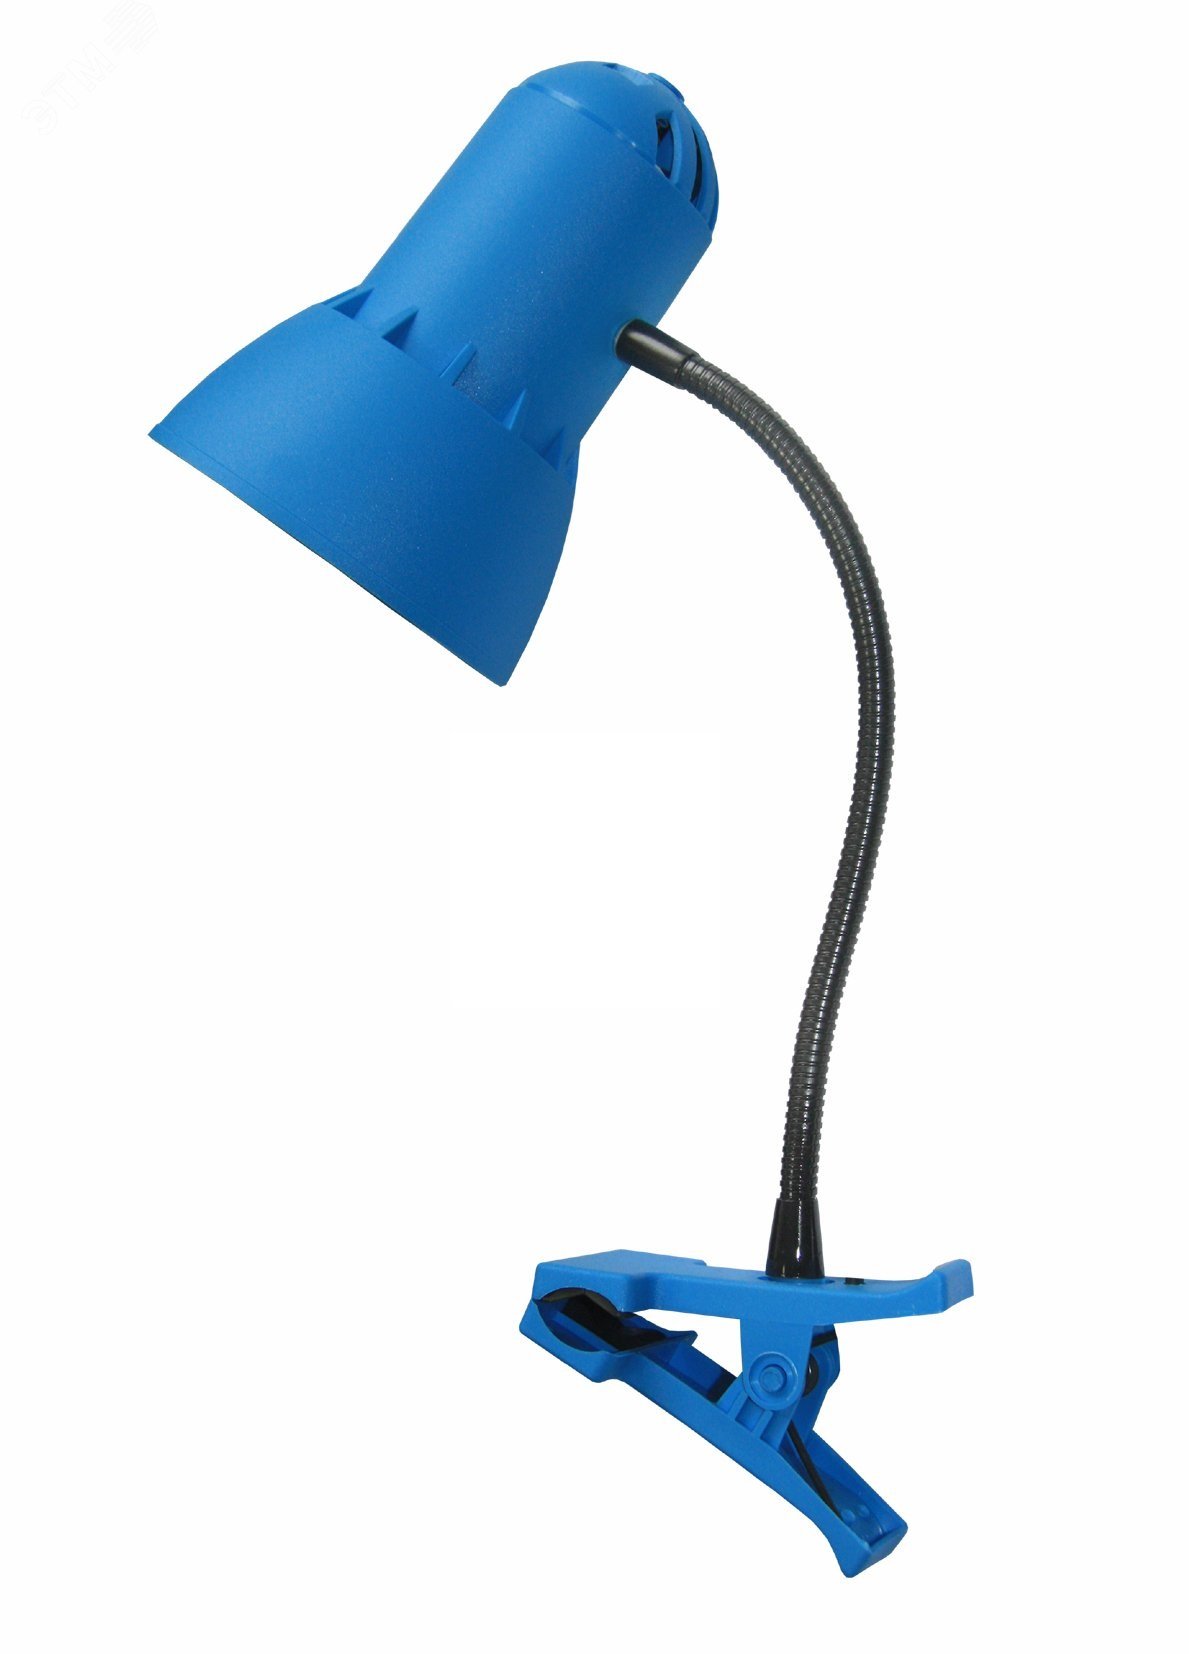 Светильник Надежда ПШ 40 Вт Е27 без ламп на прищепке гибкая стойка синий  Трансвит - превью 2